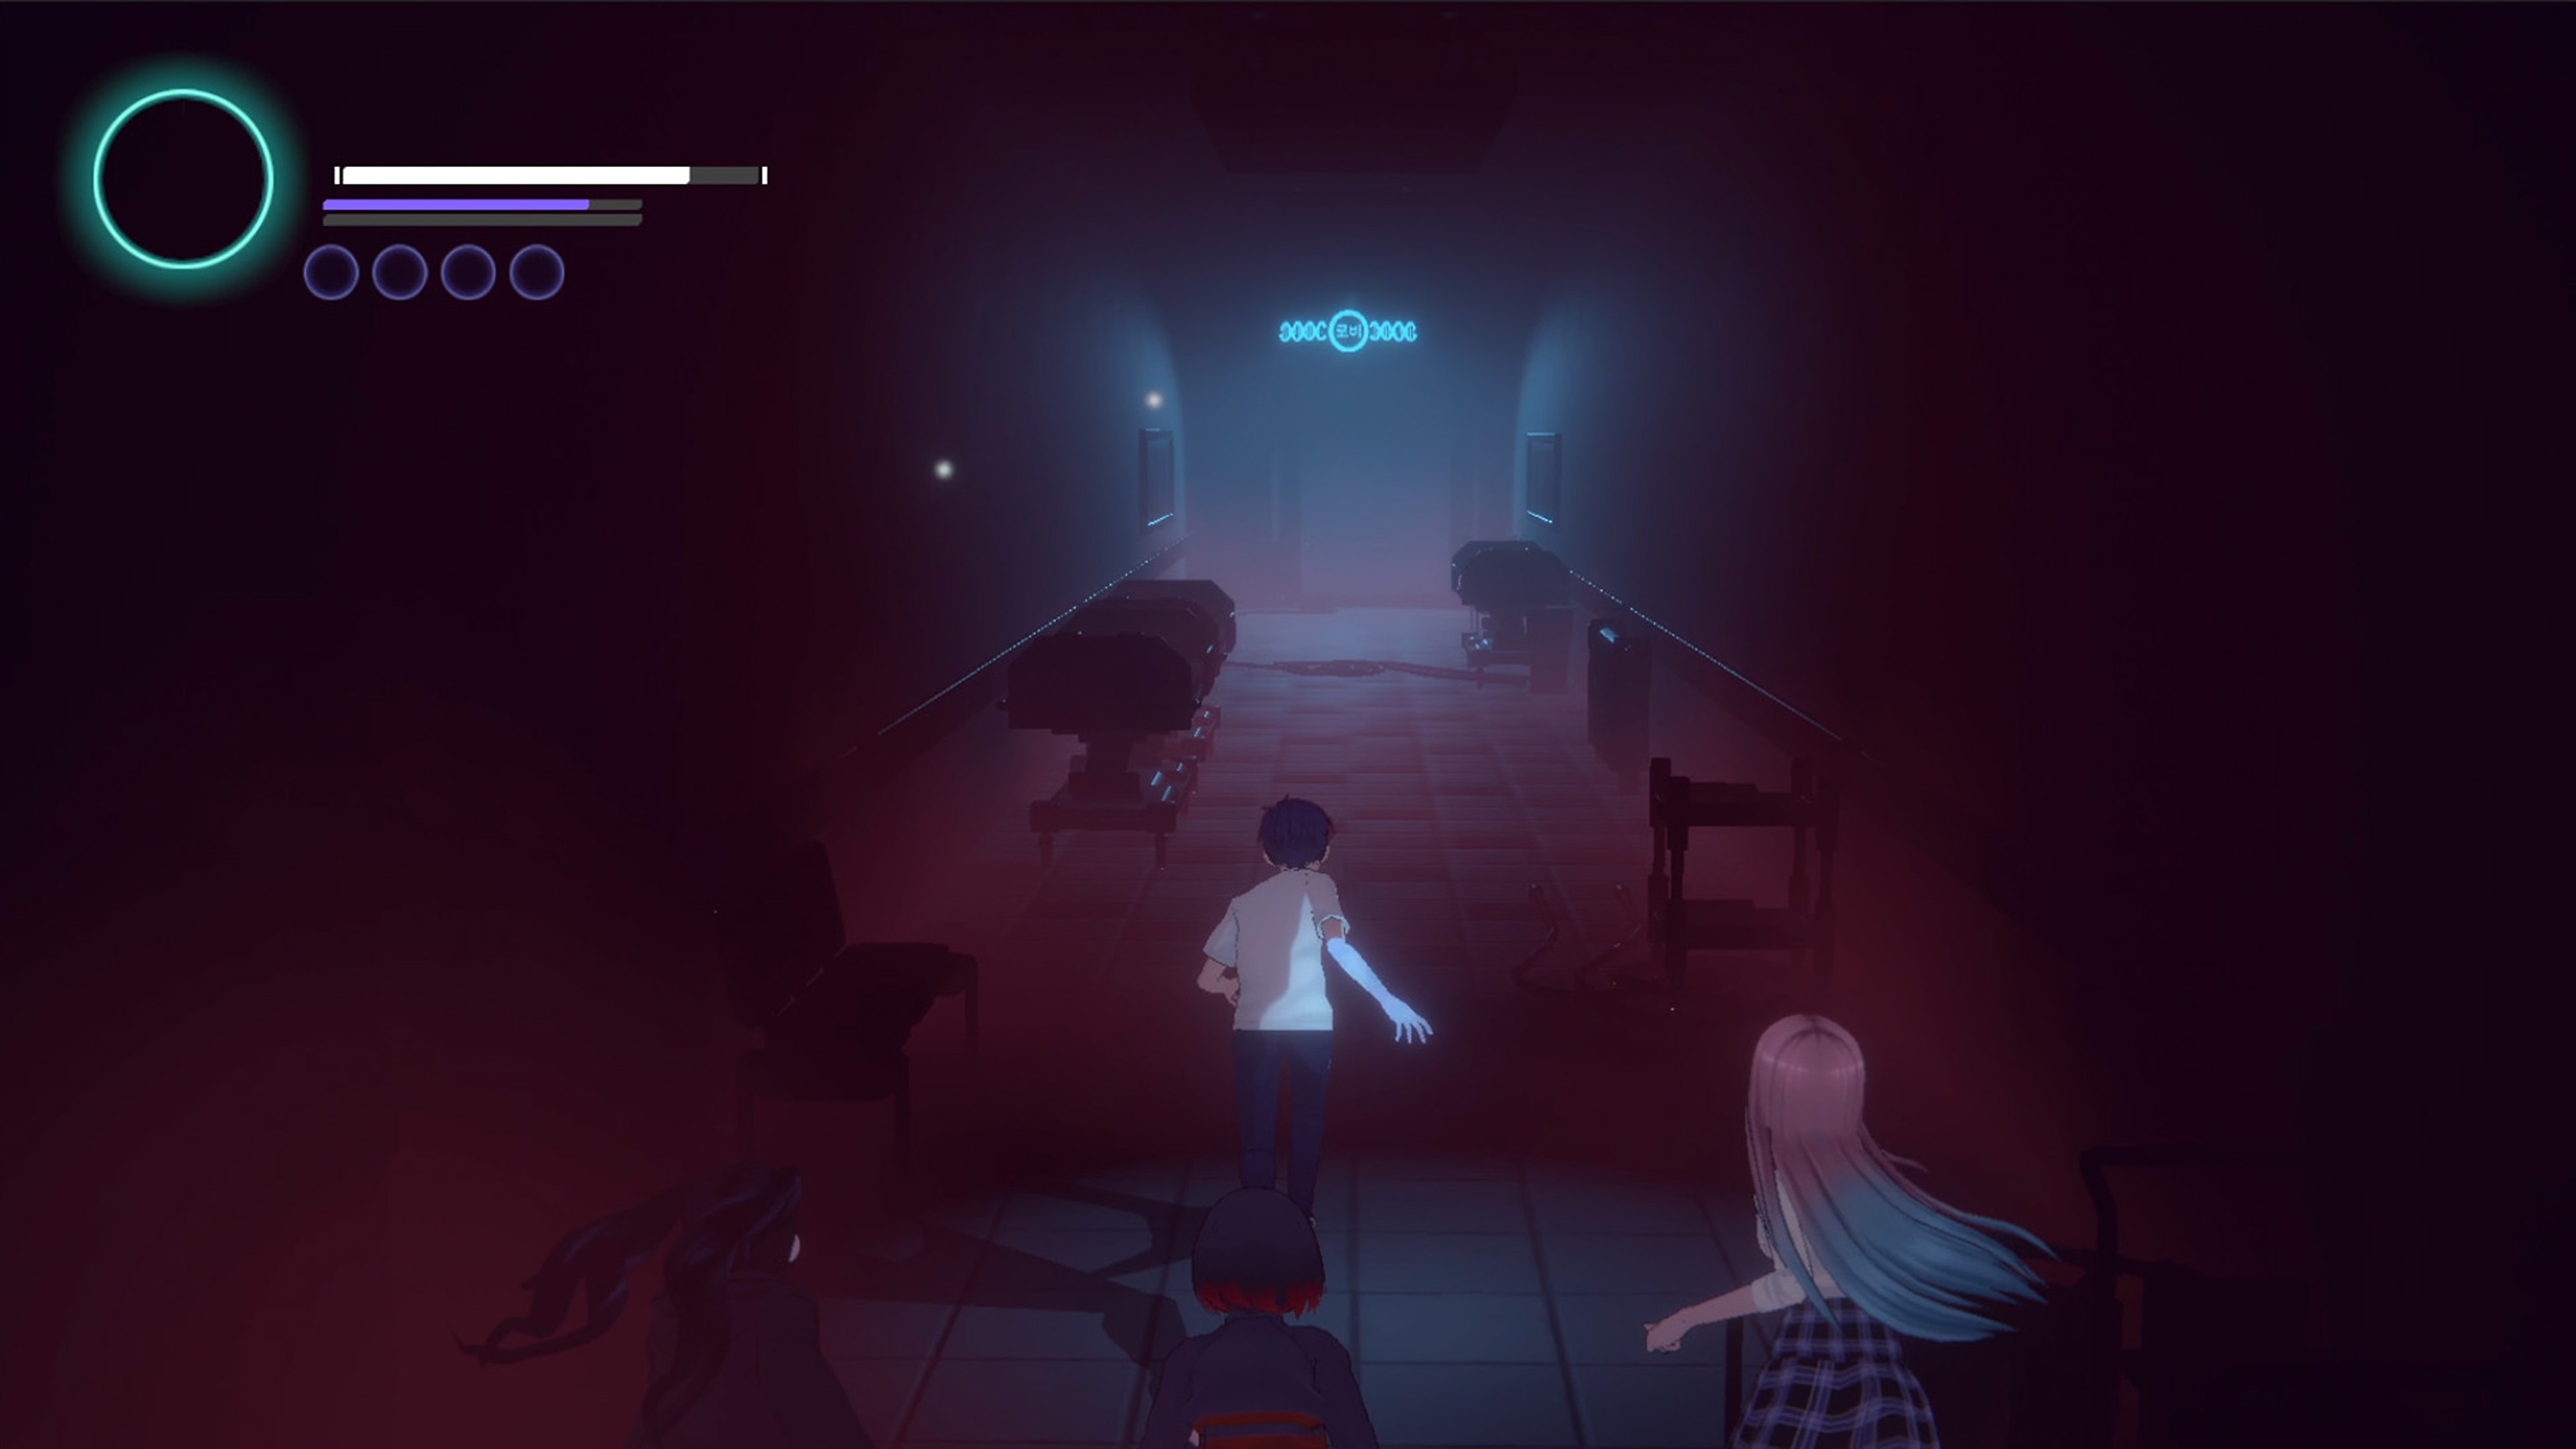 Eternights - Istantanea della schermata che mostra due personaggi liceali mentre corrono in un corridoio poco illuminato. 